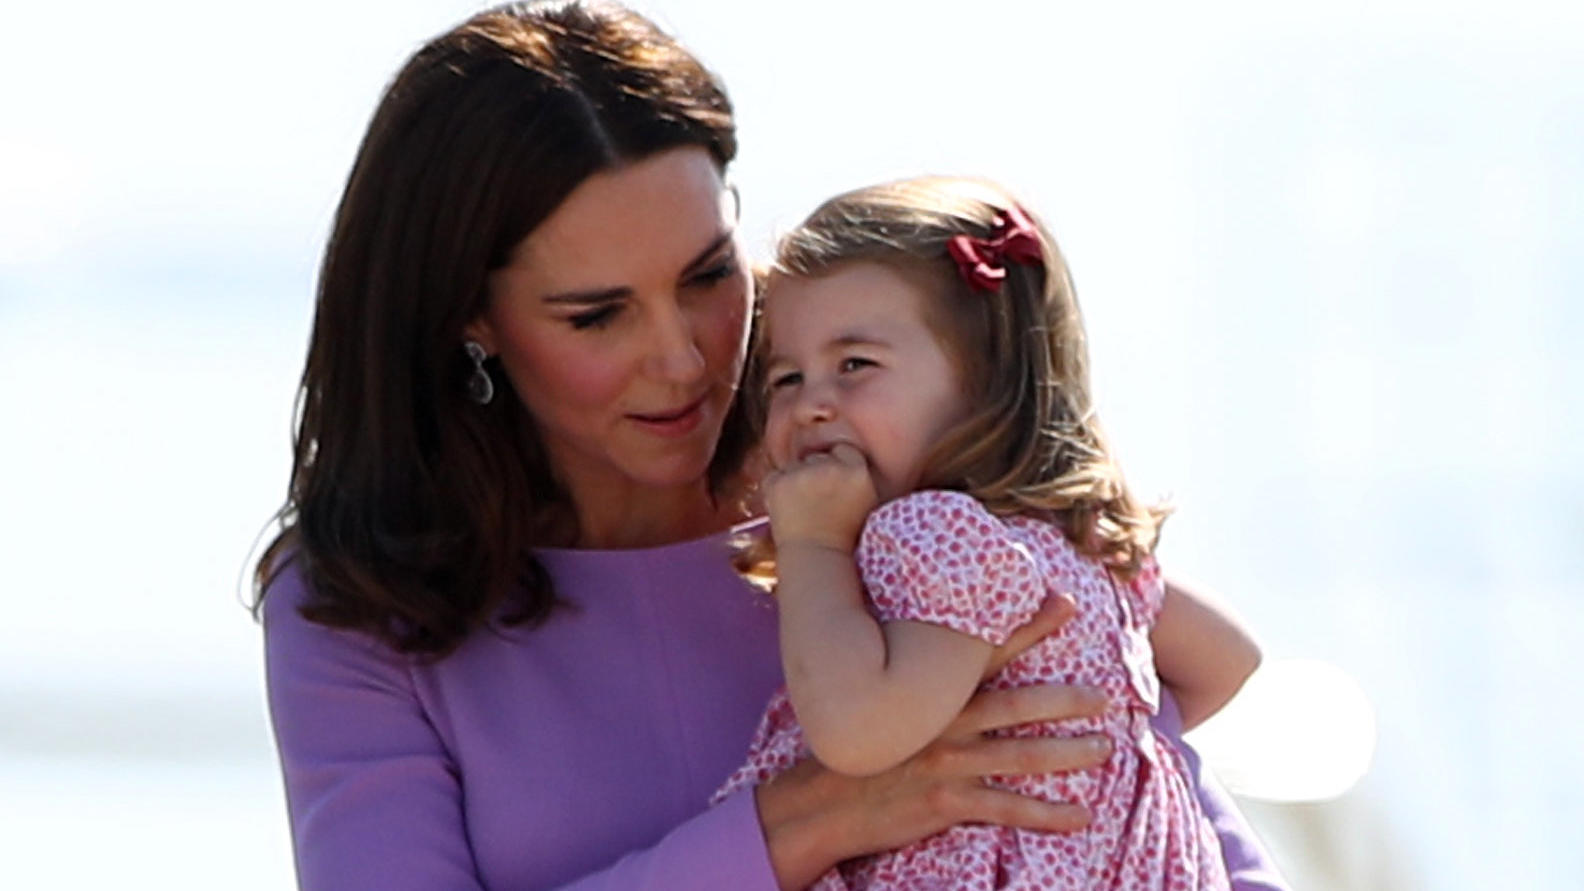 Die britische Herzogin Kate geht mit ihrem Kind, Prinzessin Charlotte vor dem Abflug zum Flugzeug. Die britische Prinzessin Charlotte feiert am 02.05.2018 ihren dritten Geburtstag. 